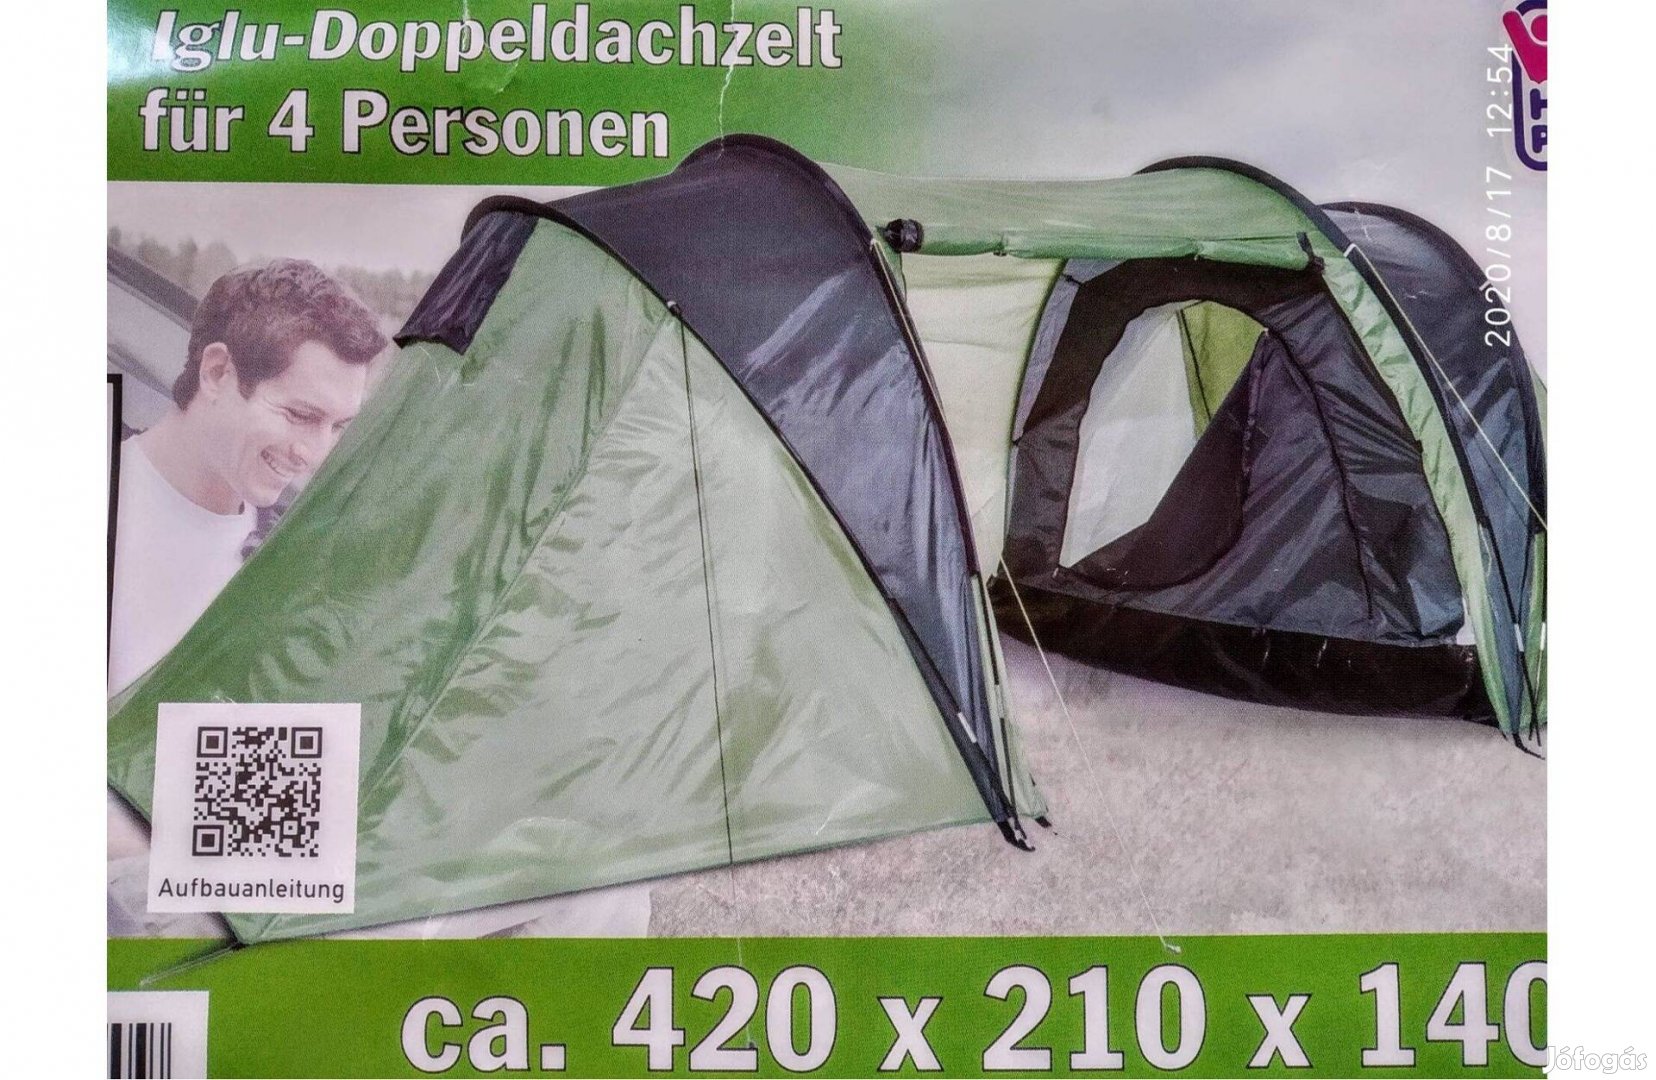 Családi Kétrétegű sátor, 420x210x140cm, 2 hálófülkés, 4 személyes